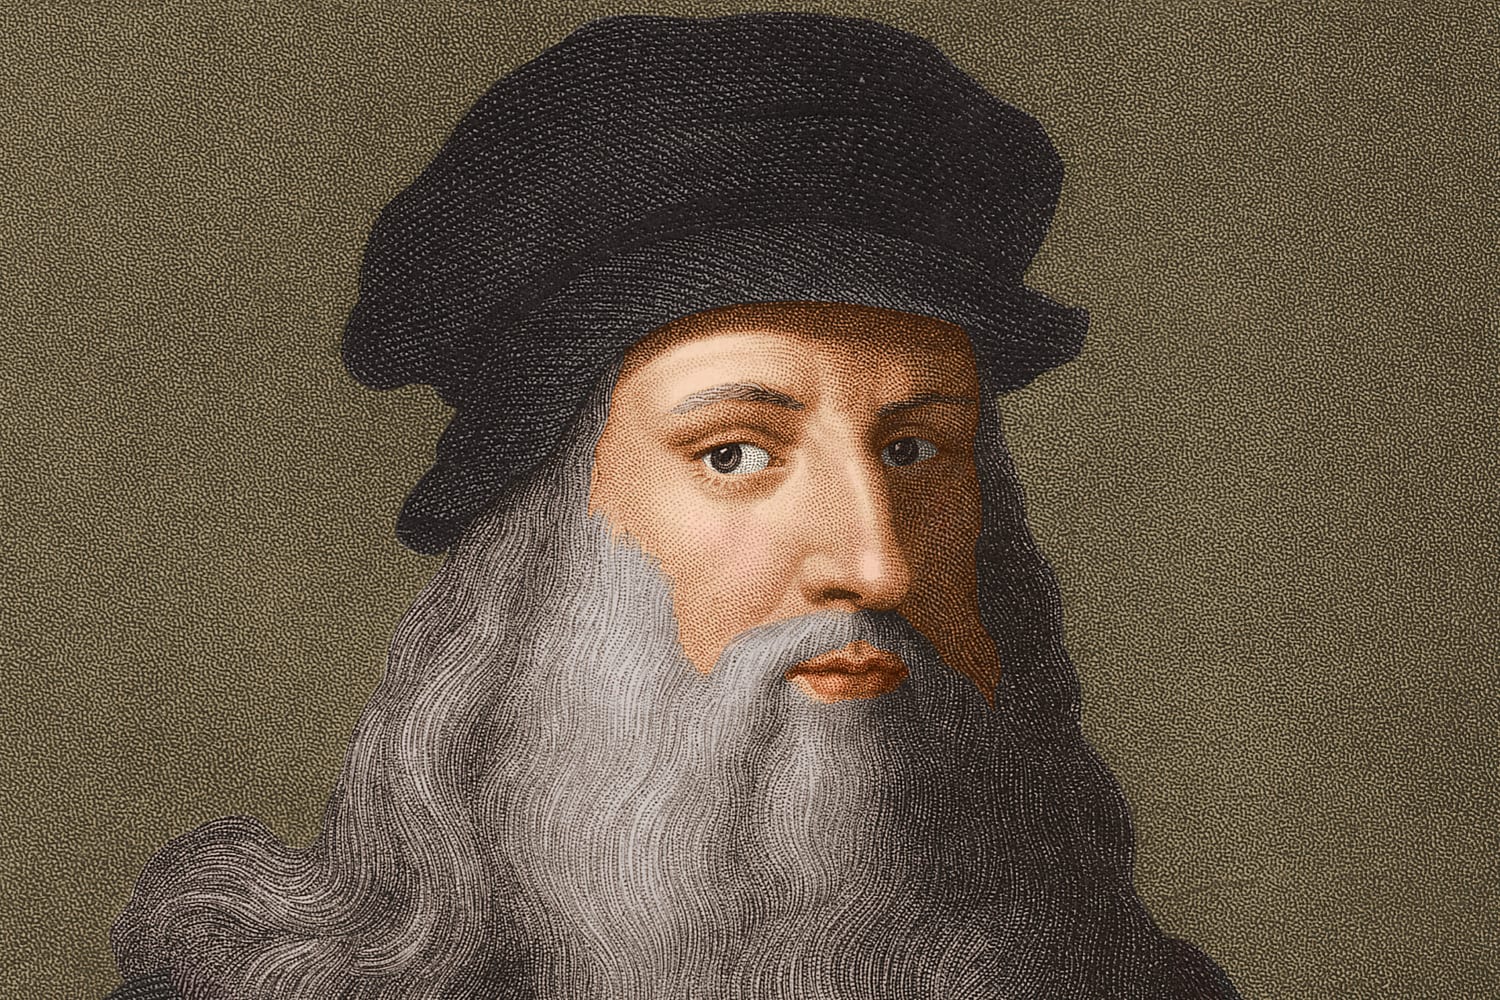 Ново проучване установи, че майката на Леонардо да Винчи е била кавказка